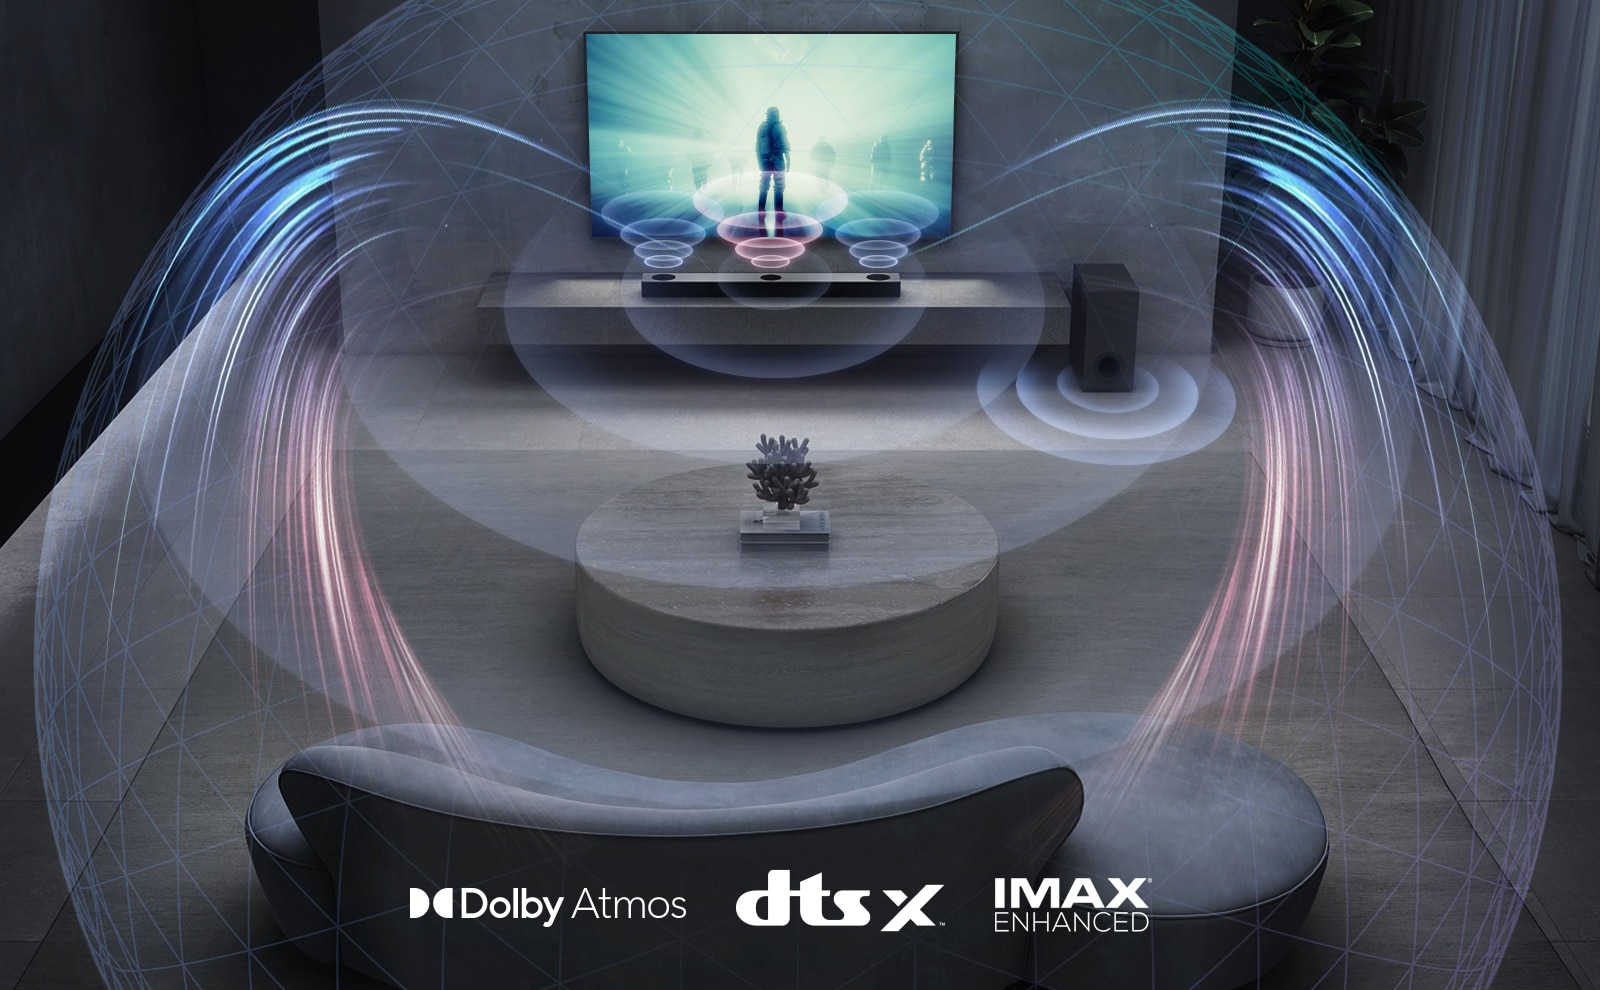 El televisor LG está en la pared de la sala de estar. Se está reproduciendo una película en la pantalla del televisor. La barra de sonido LG está justo debajo del televisor en un estante gris con un altavoz de subgraves a su lado. Un conjunto de 2 altavoces traseros están en la parte posterior de la sala de estar. Los gráficos de efectos de sonido salen de todos los altavoces. El logotipo de Dolby Atmos y DTS:X, IMAX Enhanced aparece en la parte inferior central de la imagen.